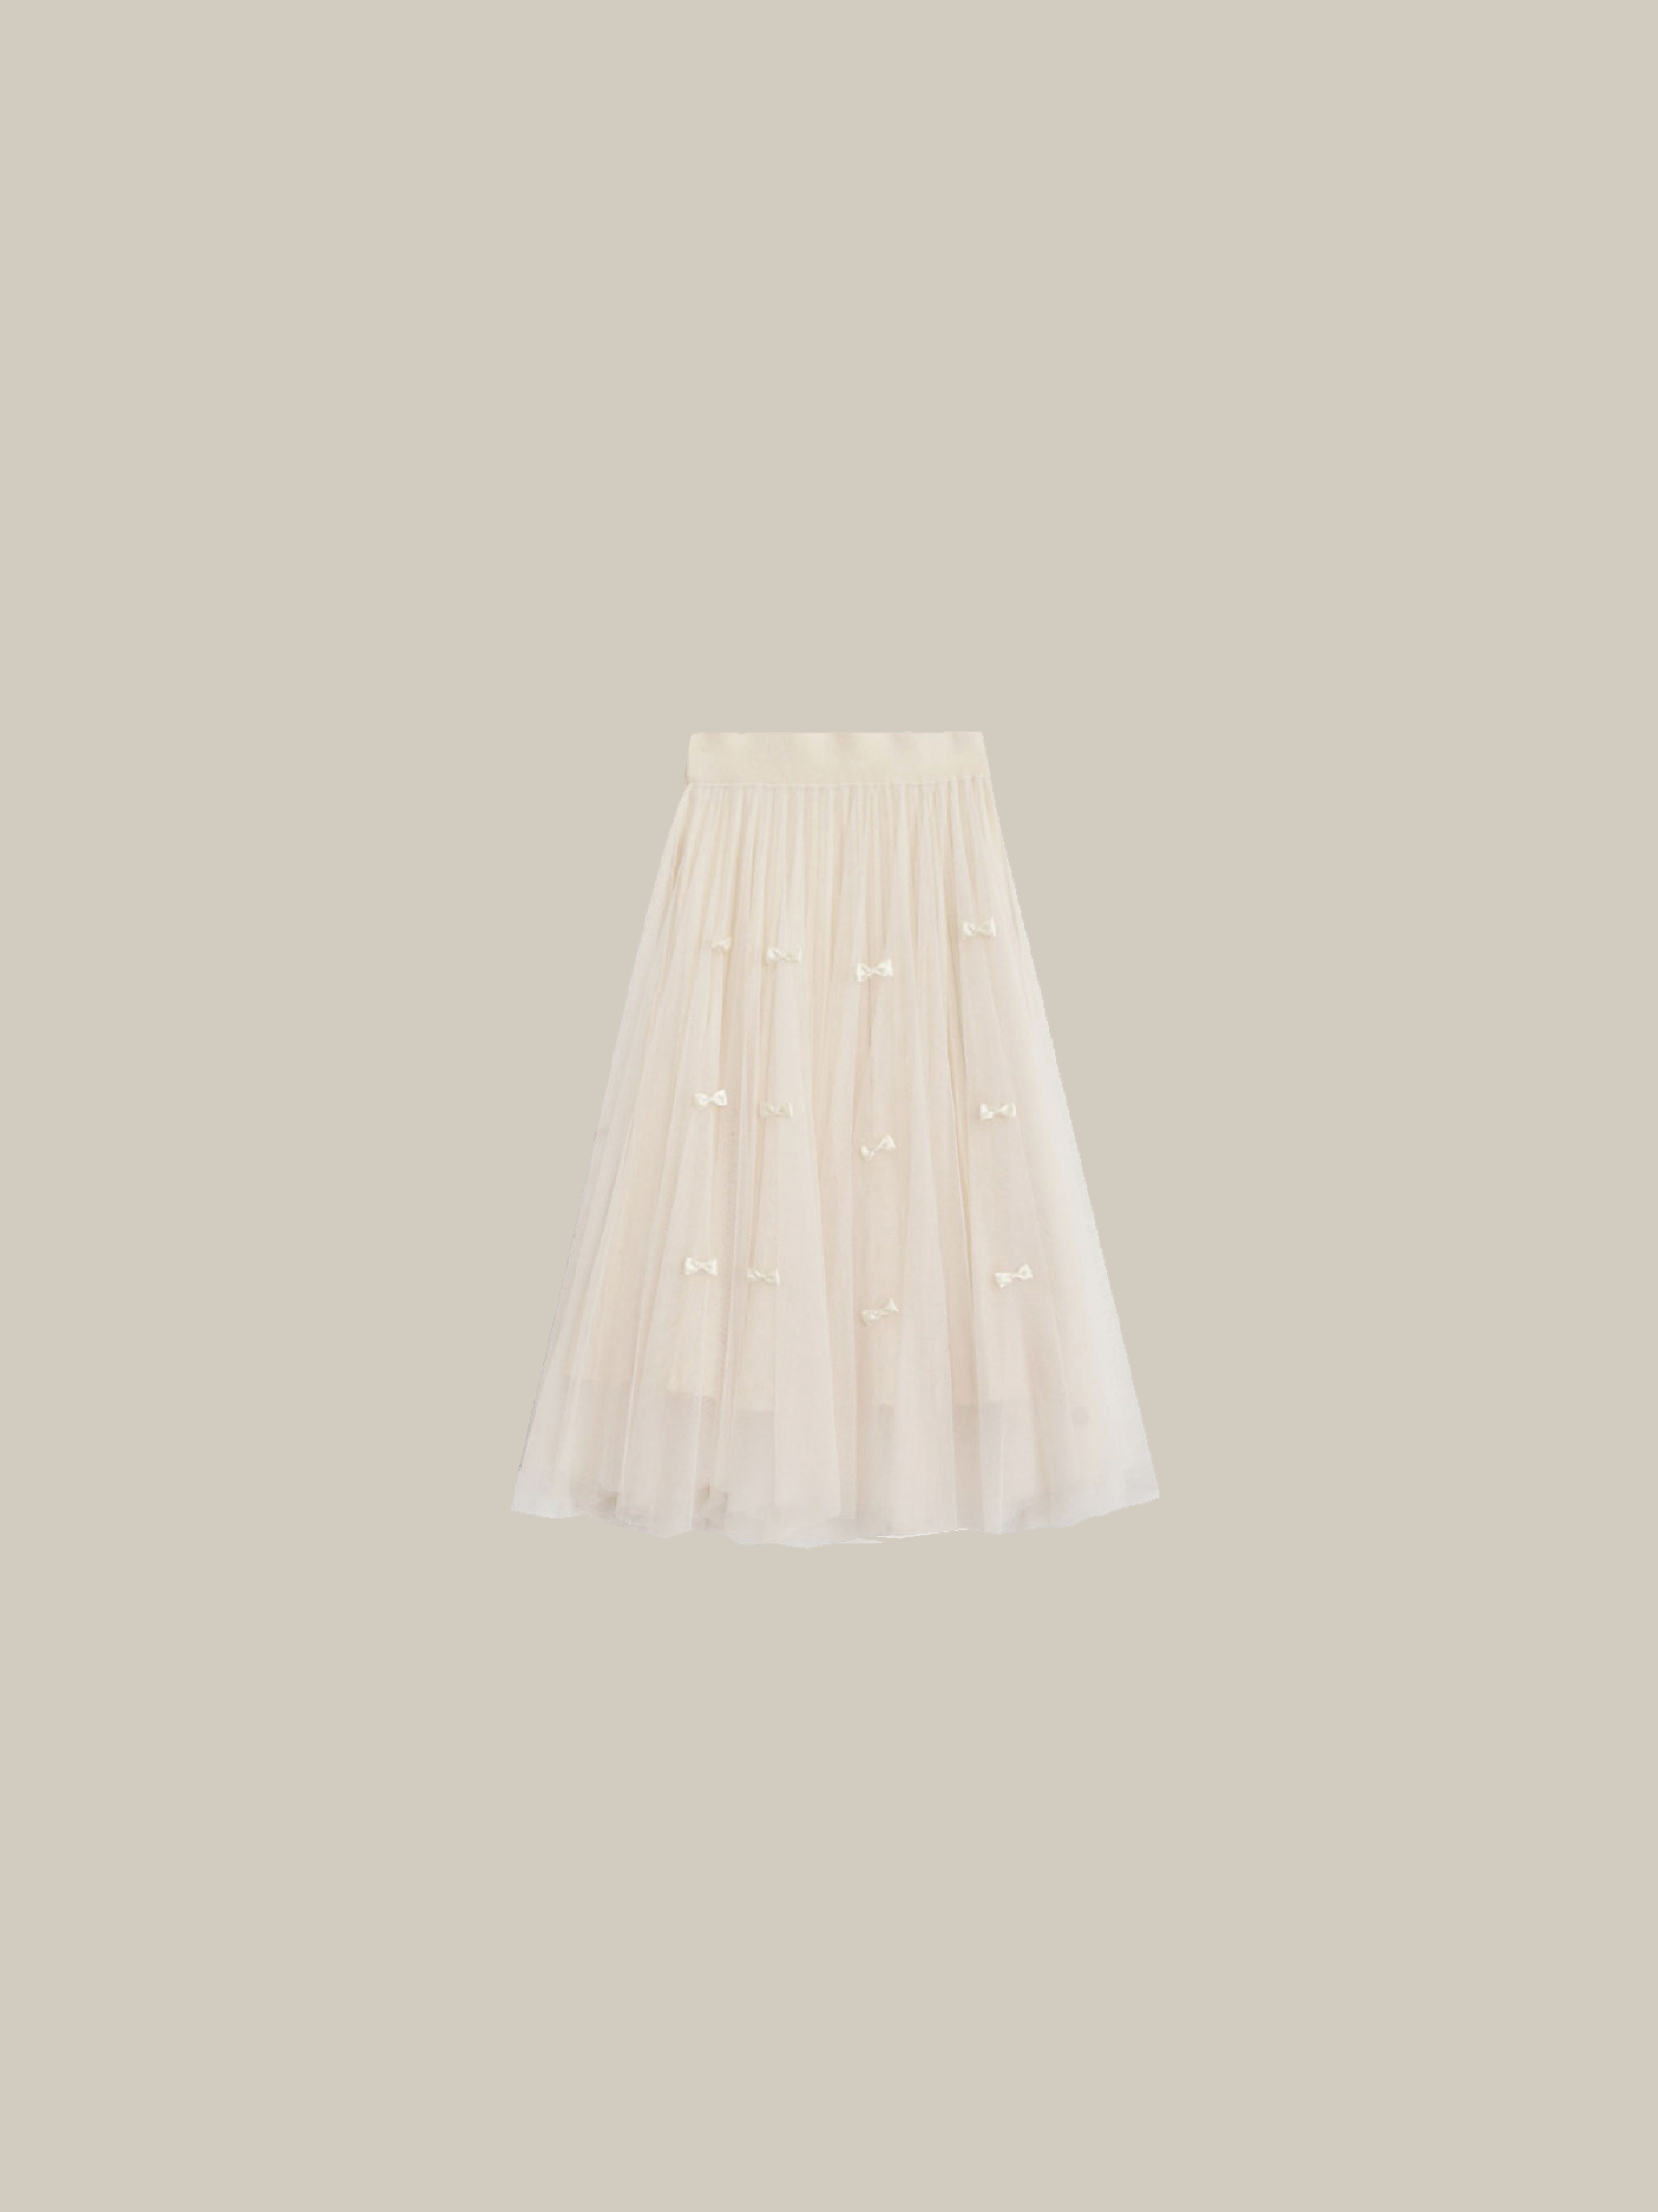 Lace Stitching 2way Ribbon Knit Skirt